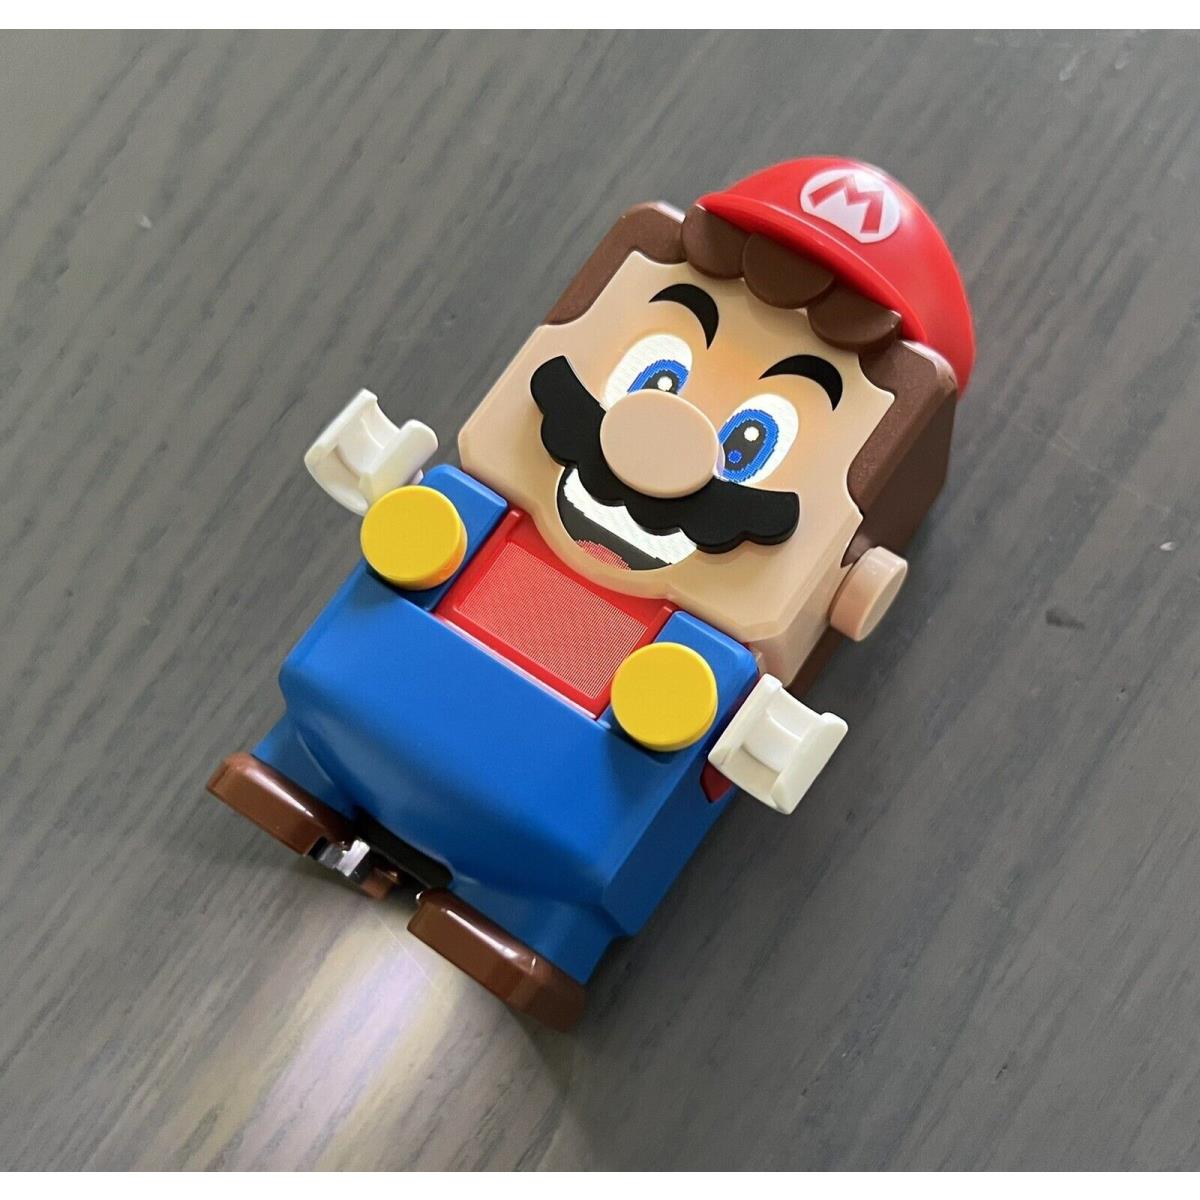 Lego Super Mario Adventures Starter Course 71360 Interactive Mario Figure Only